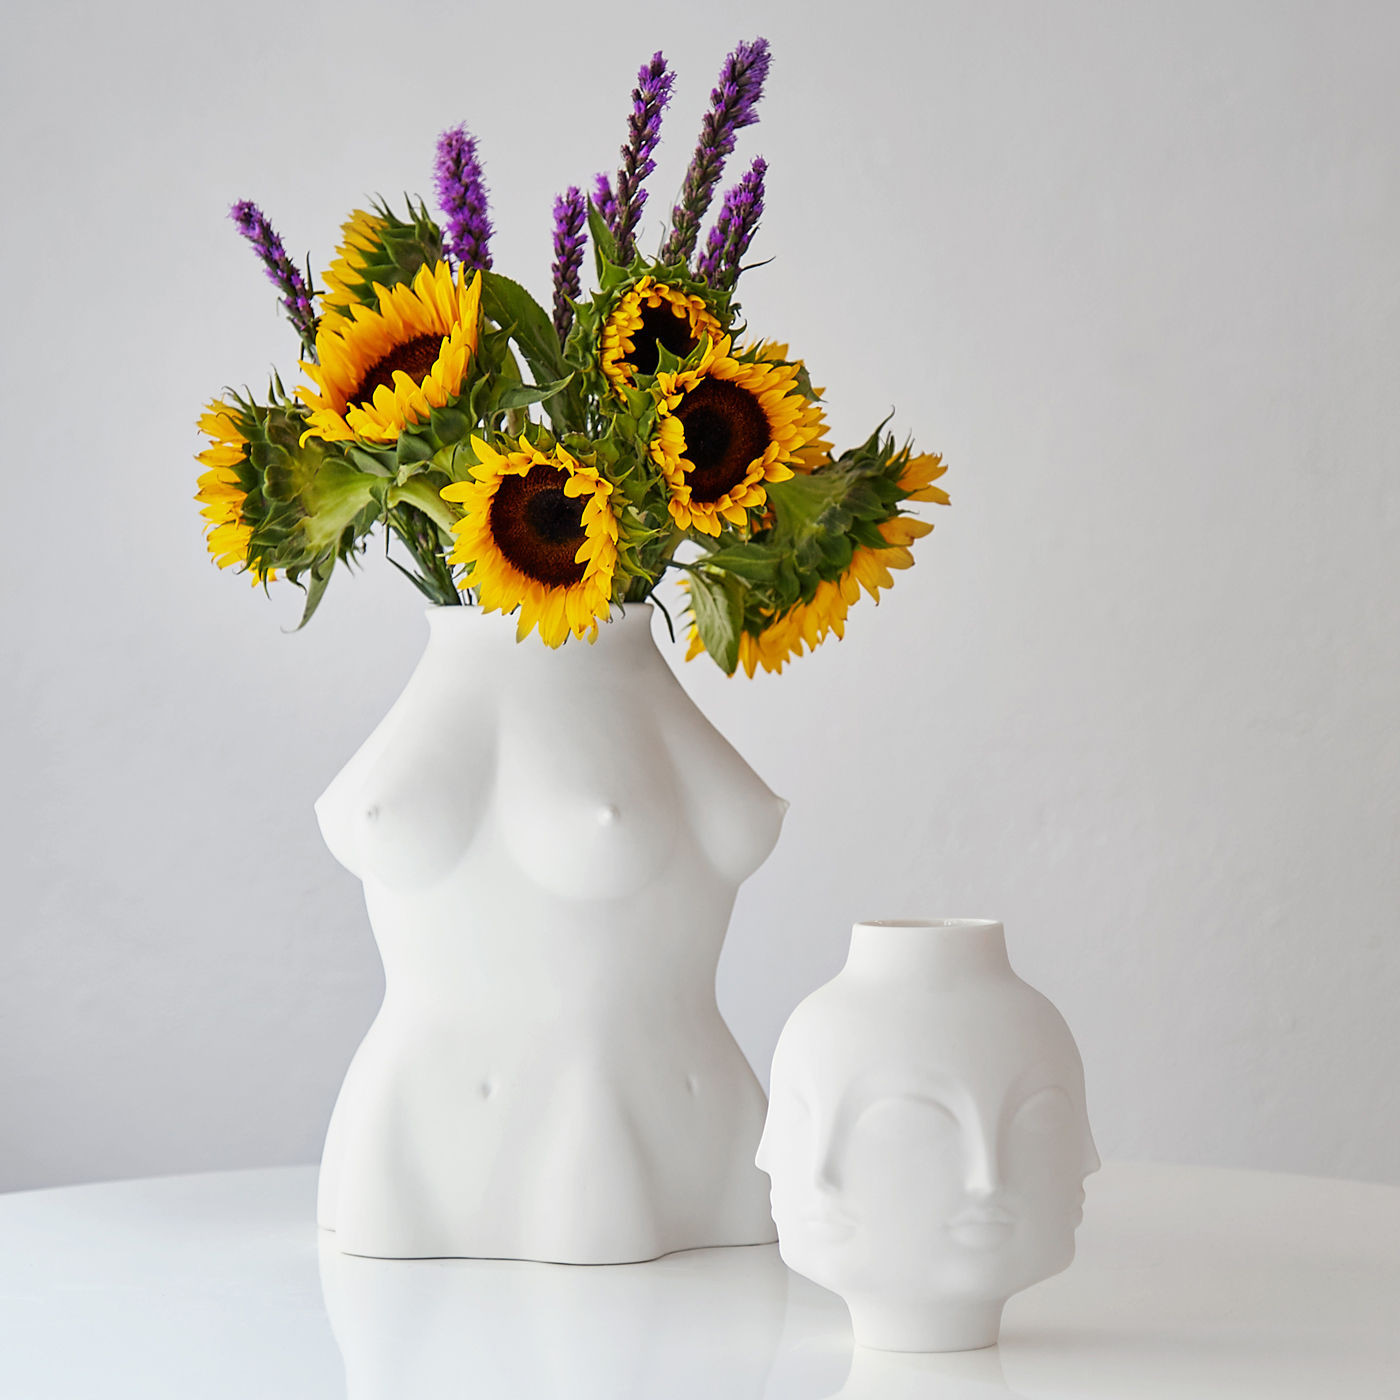 giant dora maar vase of dora maar vase white dora maar by jonathan adler made in design uk within dora maar loading